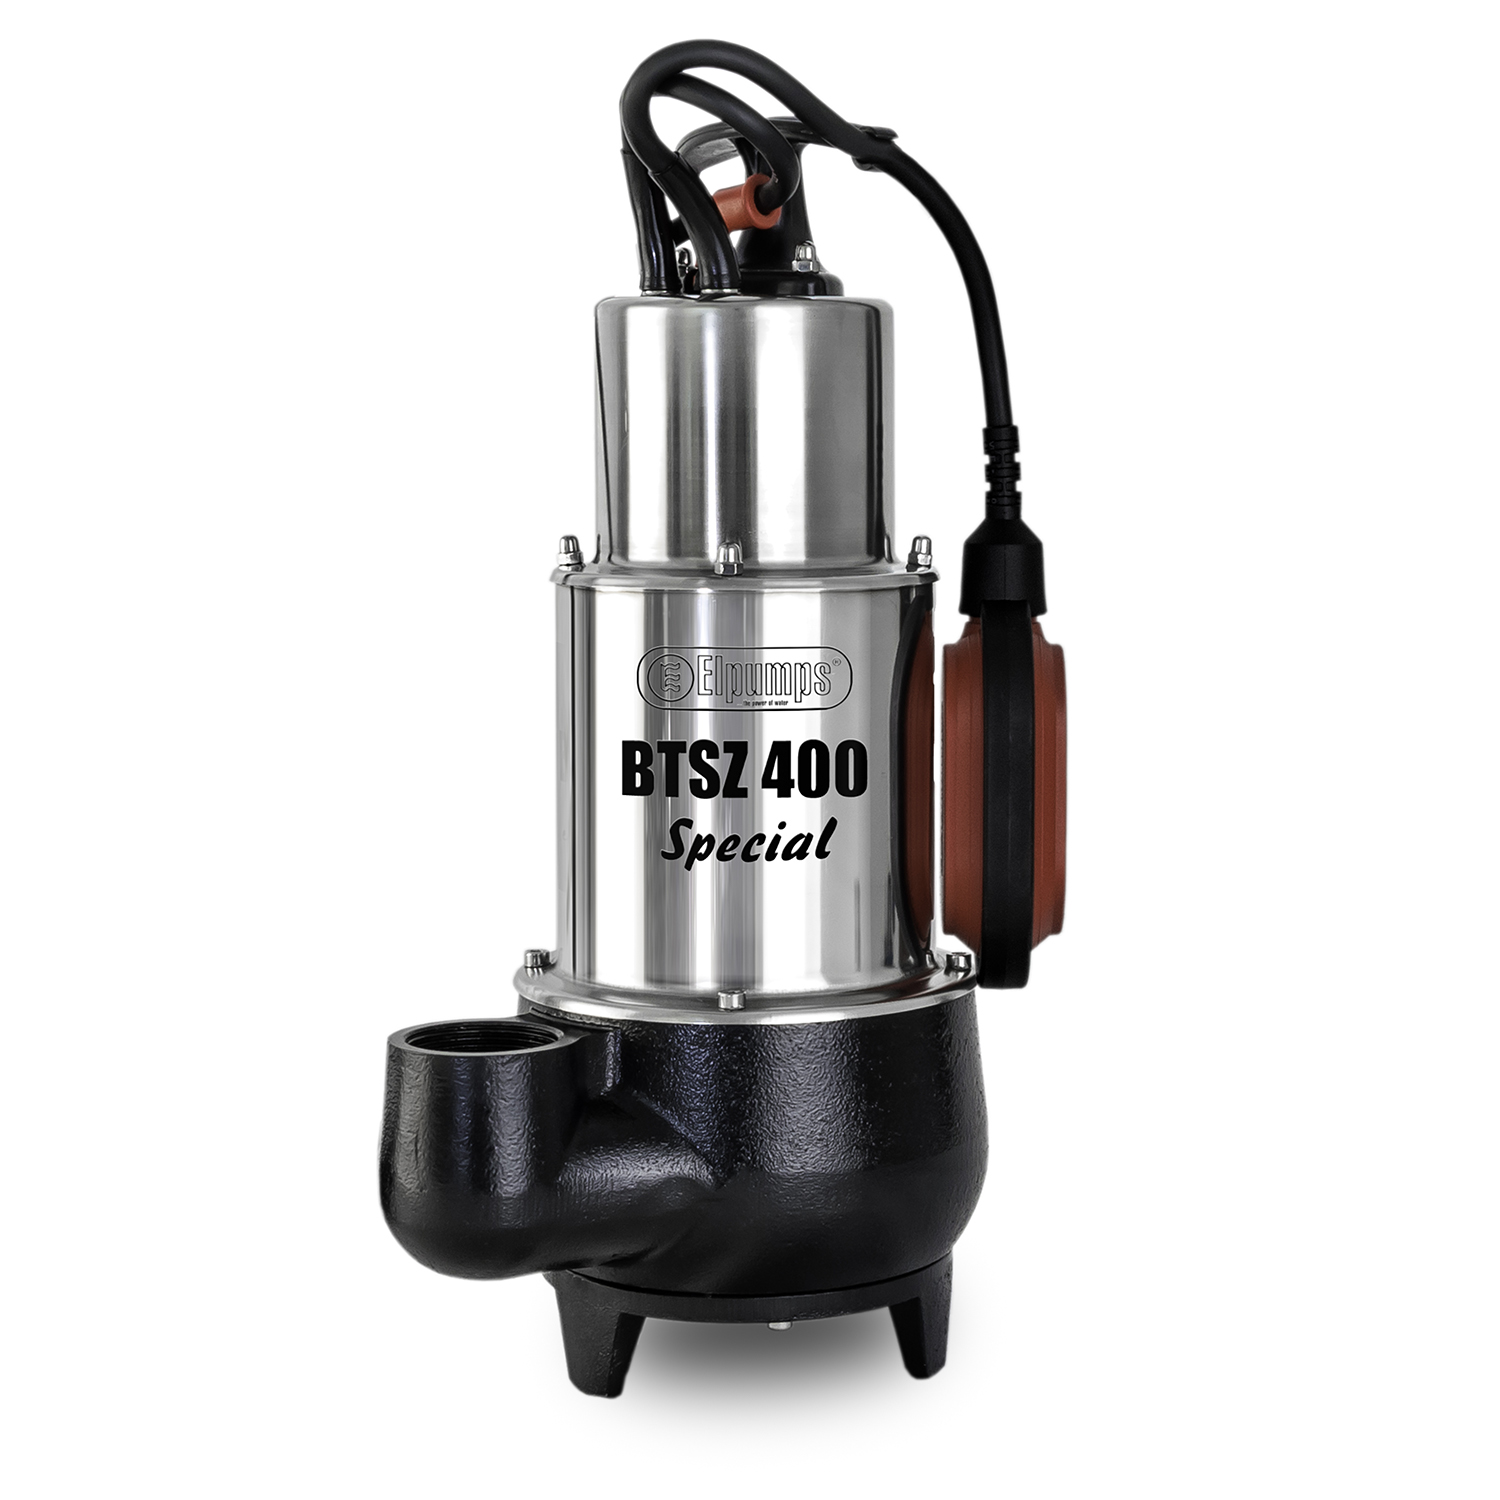 BTSZ 400 SPECIAL Pompe à eau sale, 1200 W, 24.000 l/h